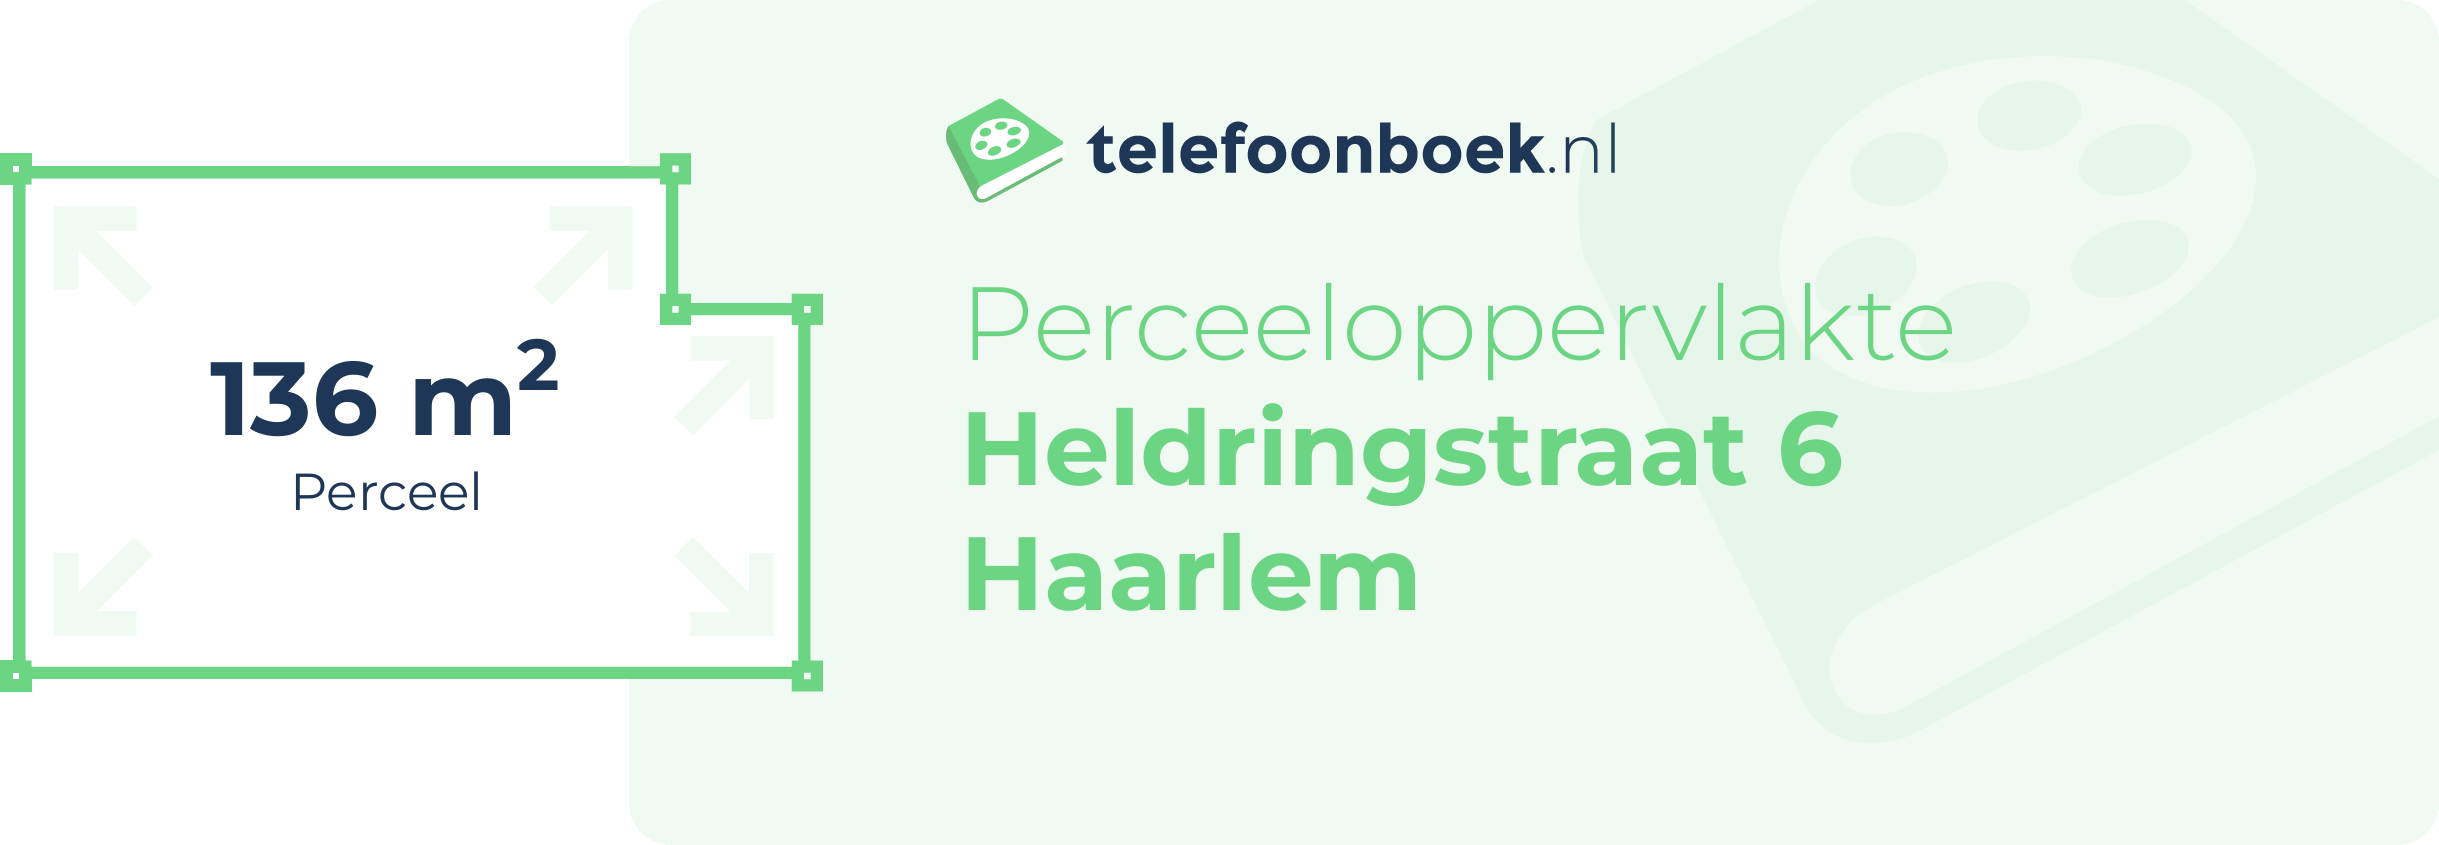 Perceeloppervlakte Heldringstraat 6 Haarlem